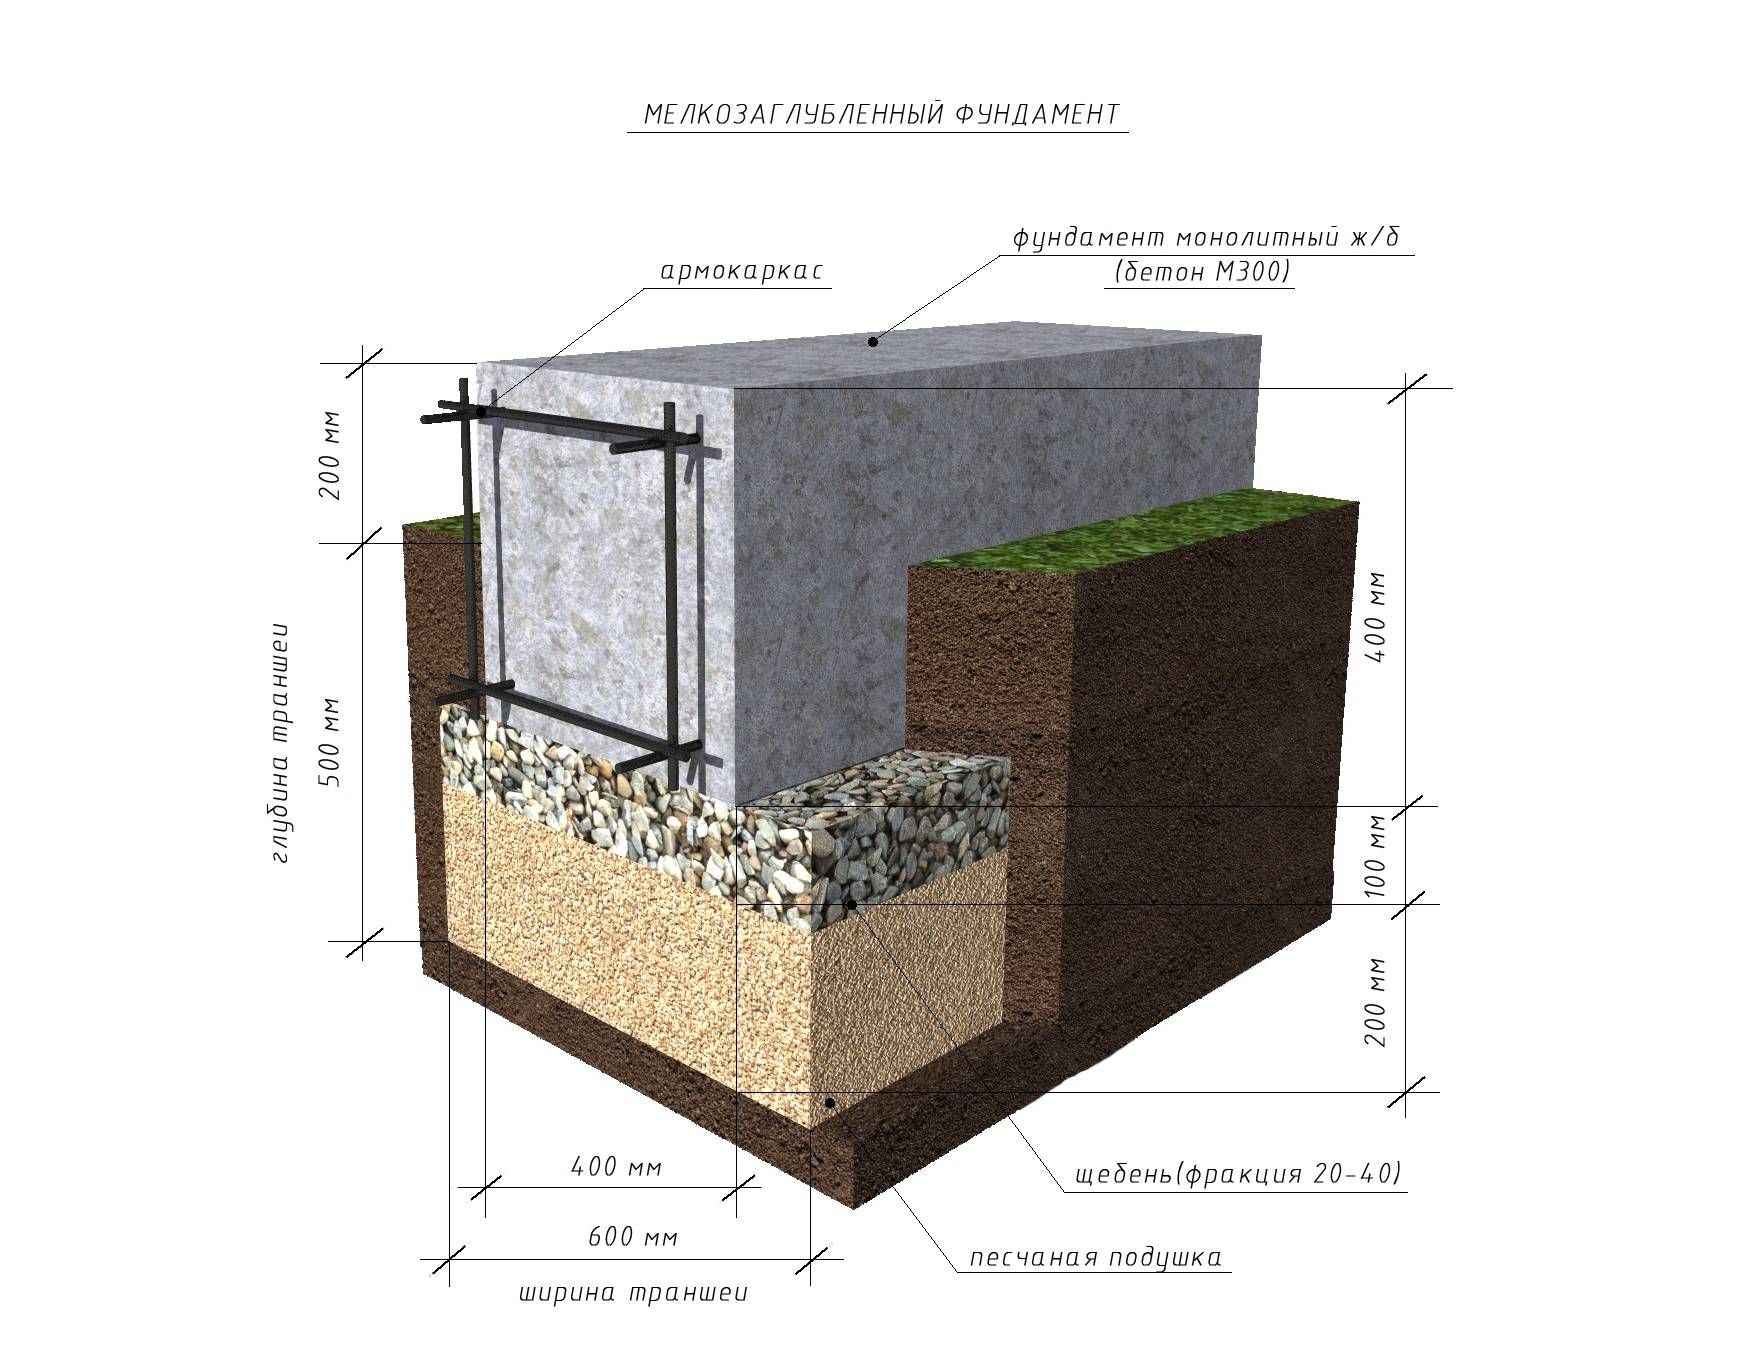 Марка бетона для фундамента частного дома: выбор сорта и пропорции